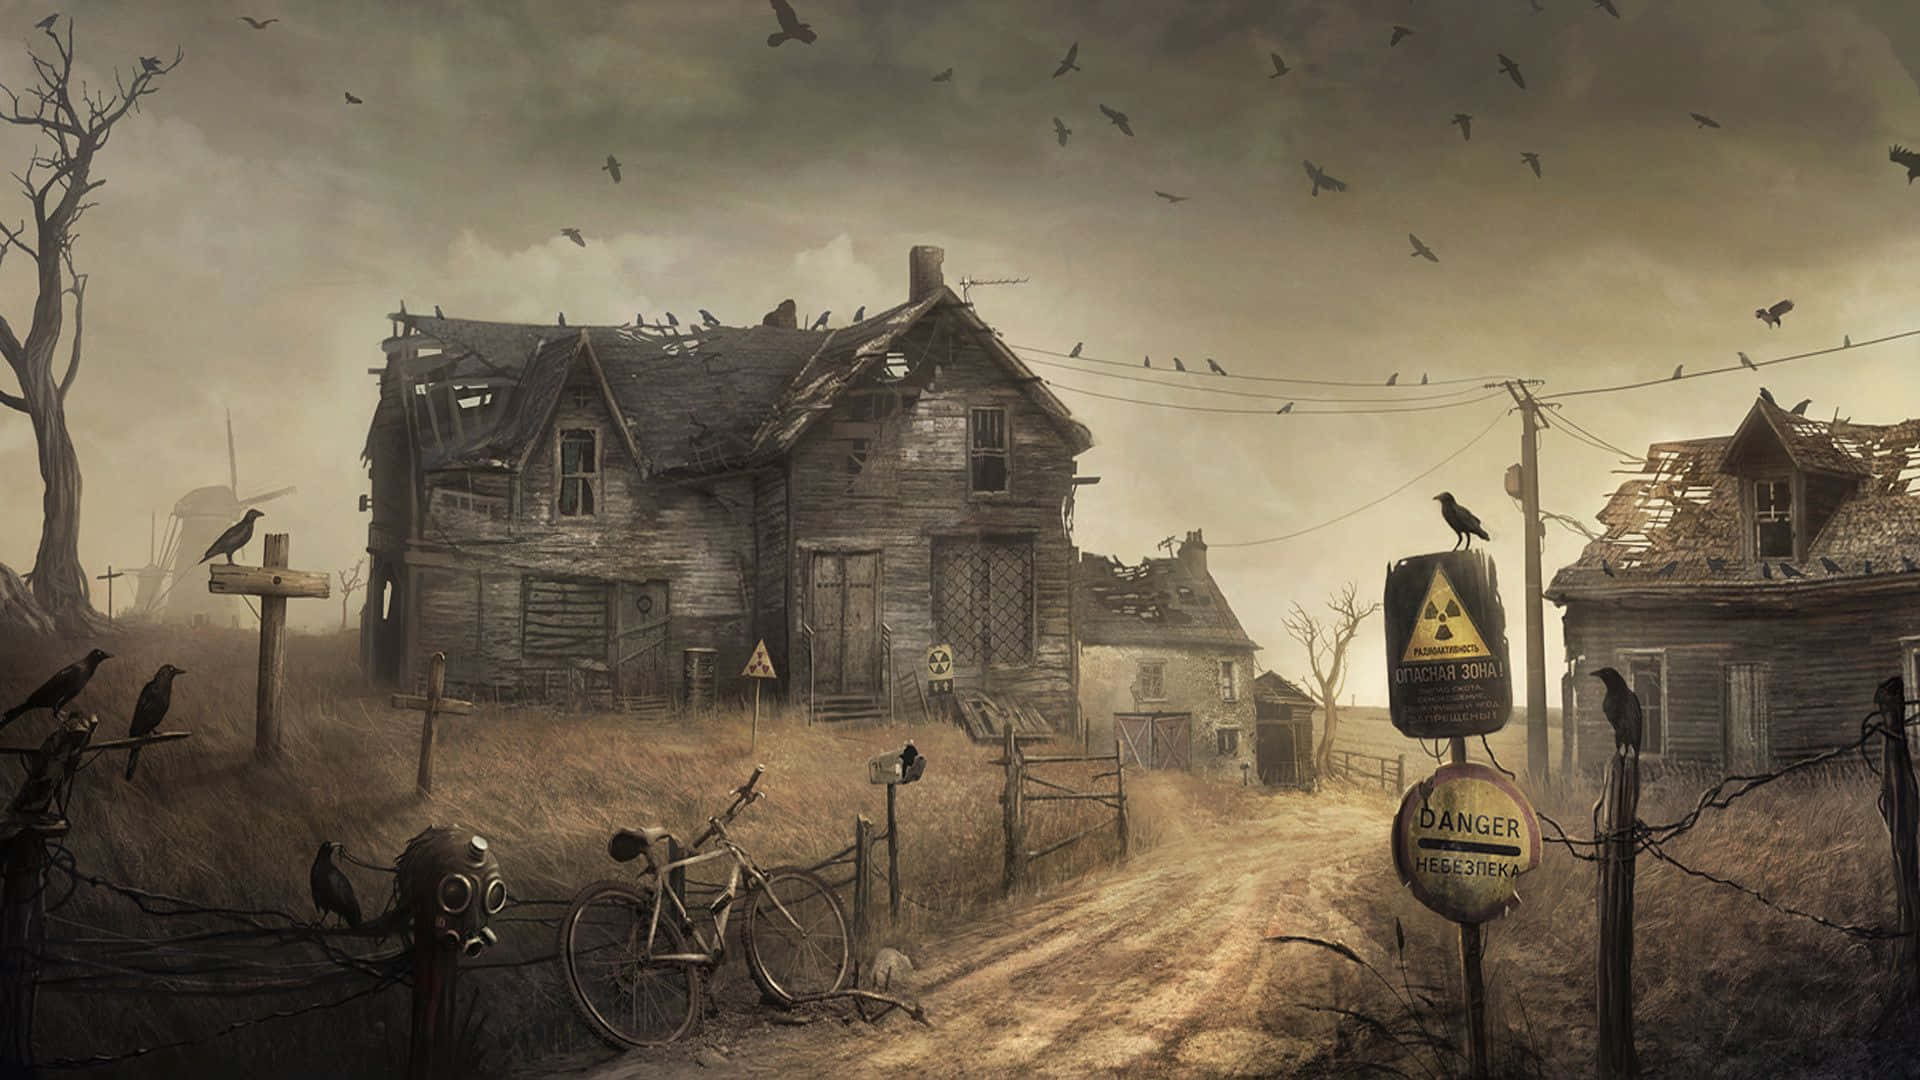 Et mørkt, uhyggeligt og skræmmende maleri af et hus og krager Wallpaper